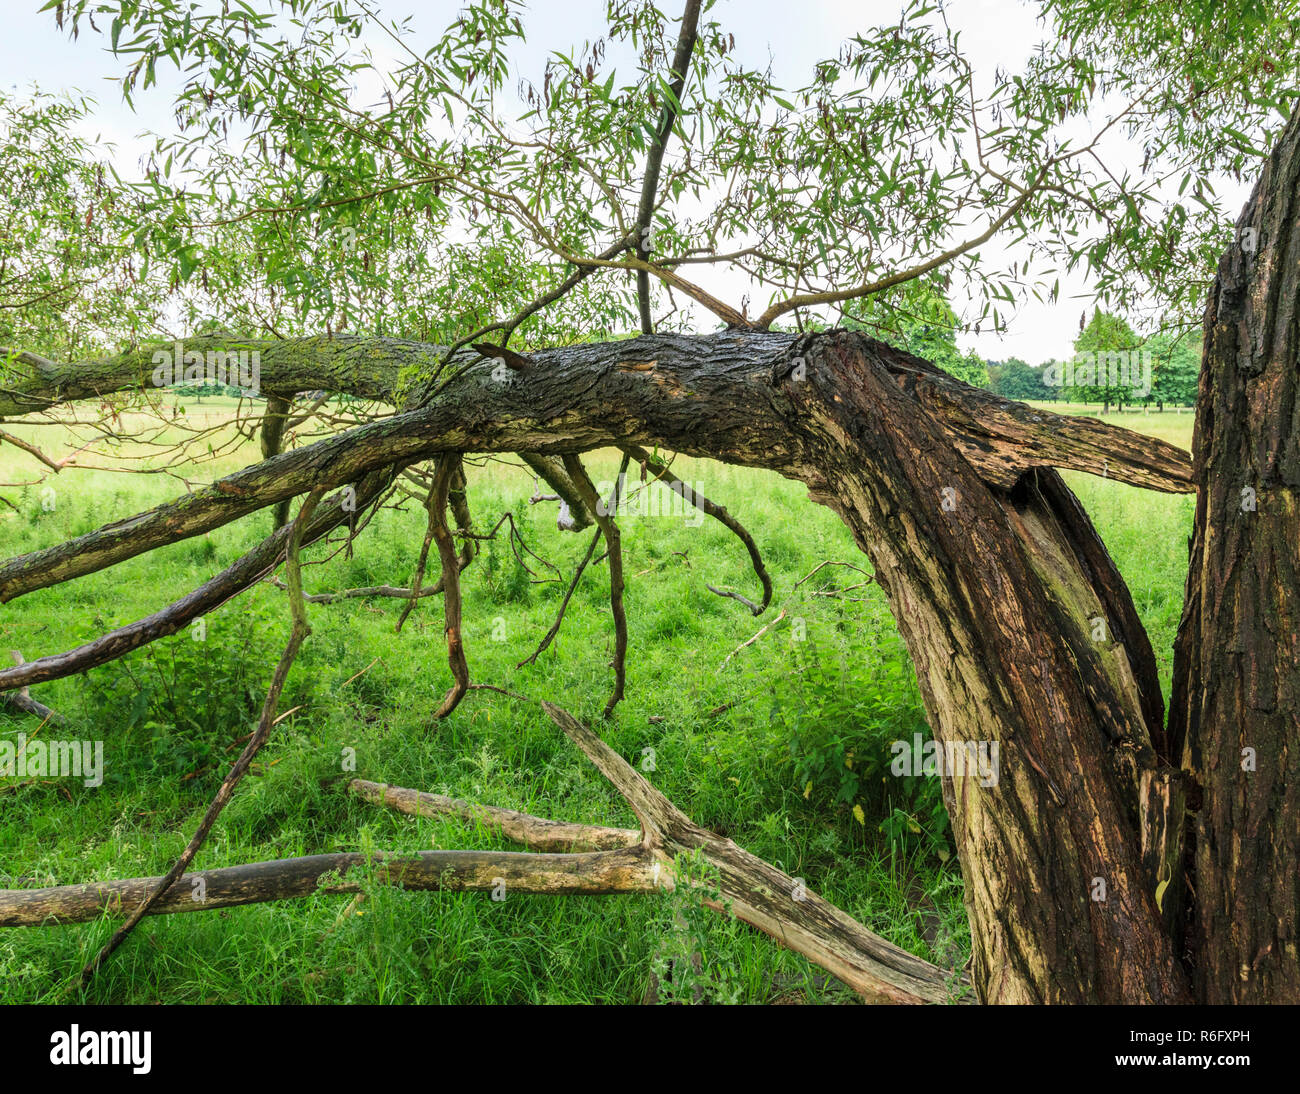 Nuevo crecimiento dividido en un viejo tronco de árbol. Una tormenta daña los árboles con hojas nuevas creciendo, Nottingham, Inglaterra, Reino Unido. Foto de stock